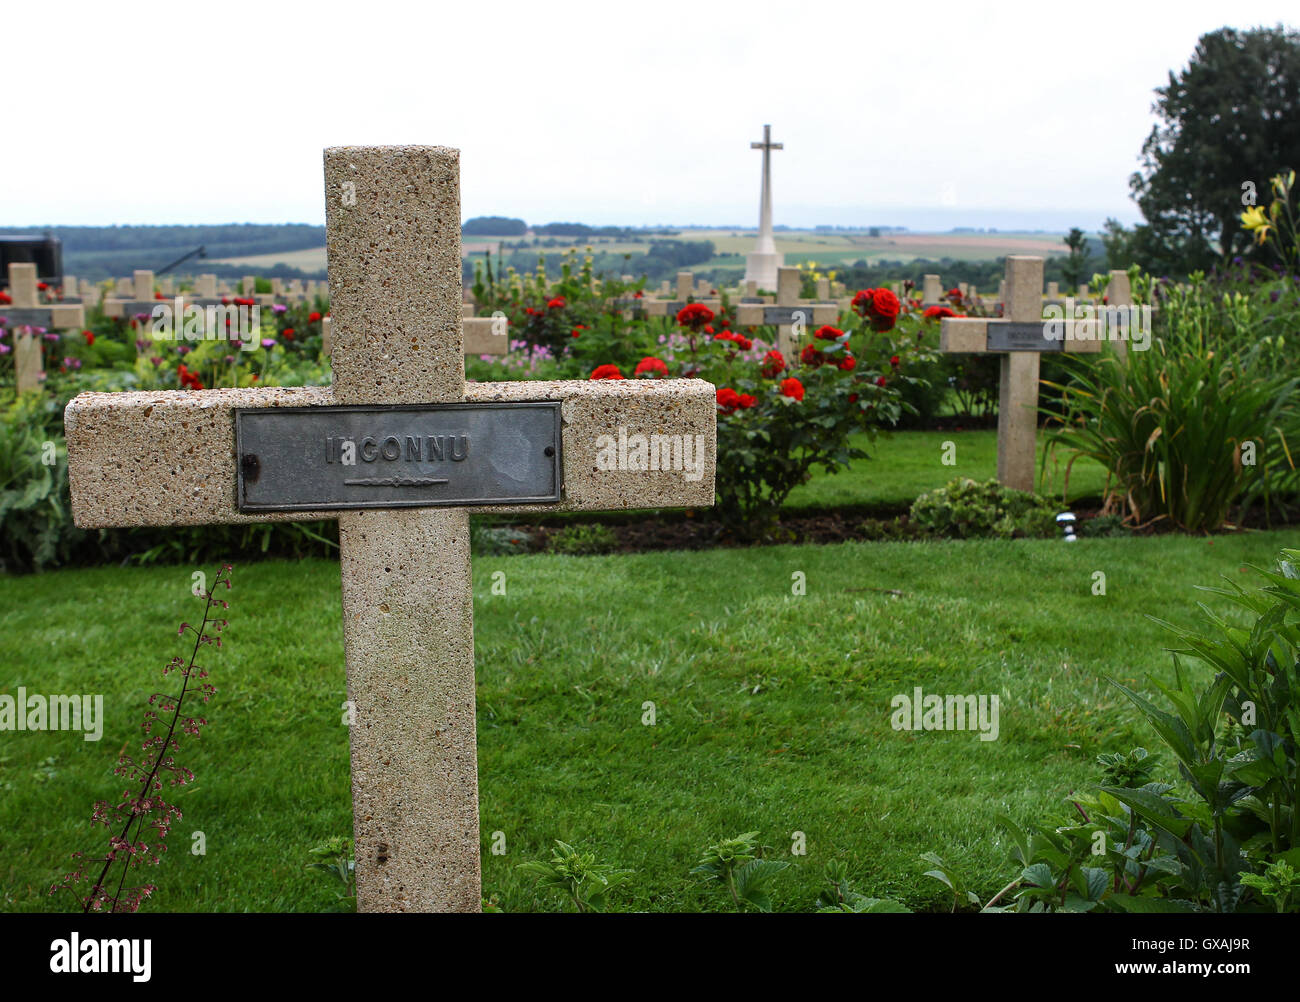 Vistas generales del Thiepval Memorial en el centenario del comienzo de la batalla del Somme Featuring: Atmósfera, ver dónde: Thiepval, Francia cuando: 01 Jul 2016 Foto de stock